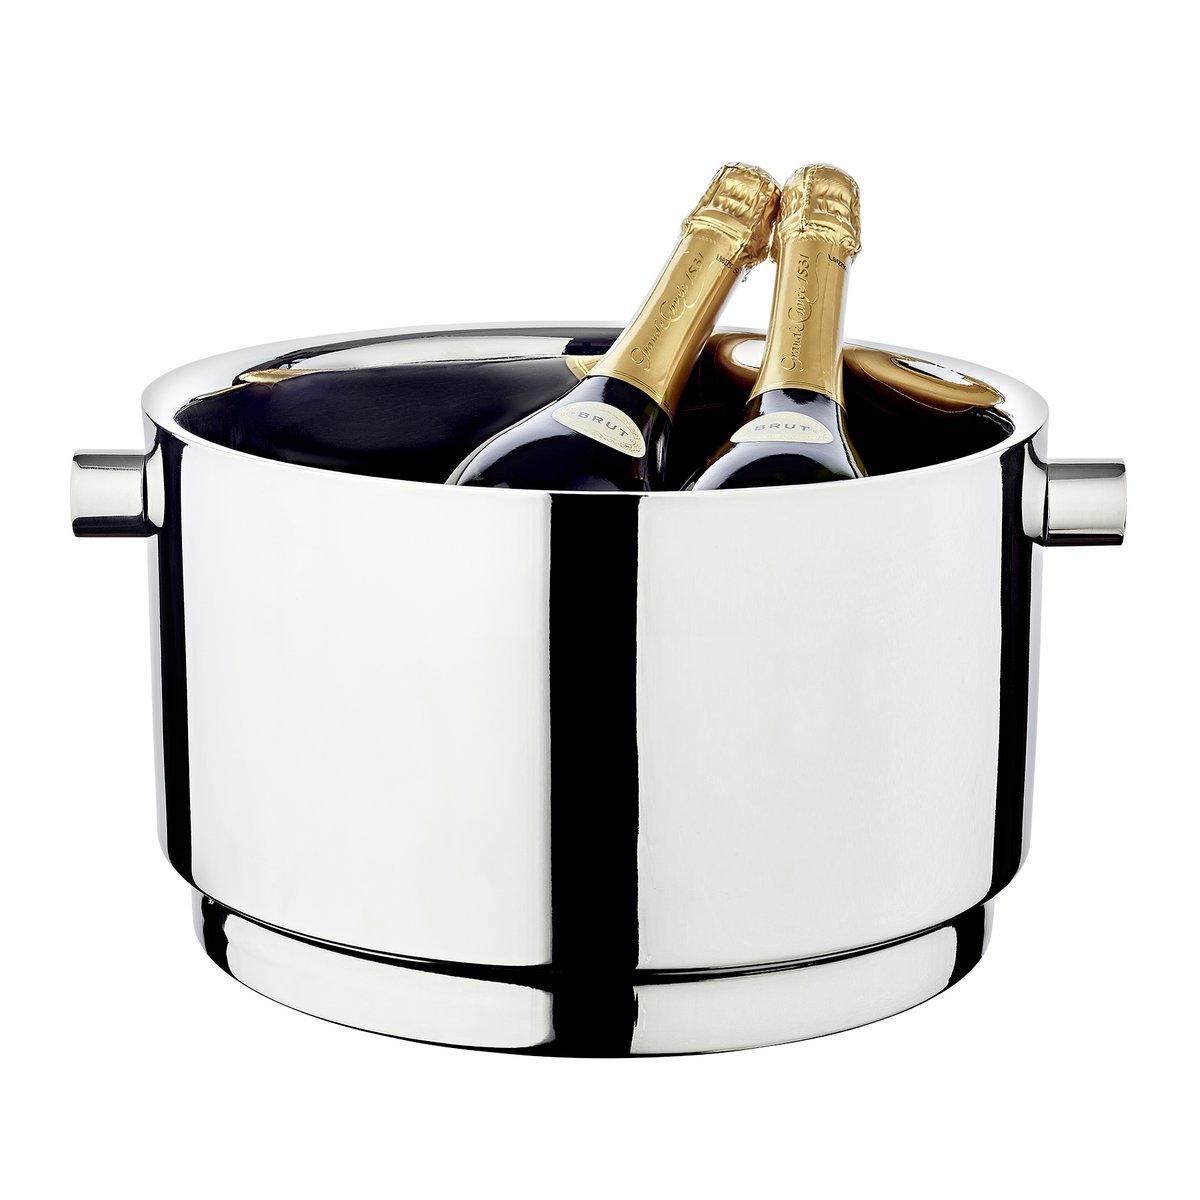 XXL Champagnerkühler Rayo Edelstahl hochglanzpoliert 32 cm - HomeDesign Knaus